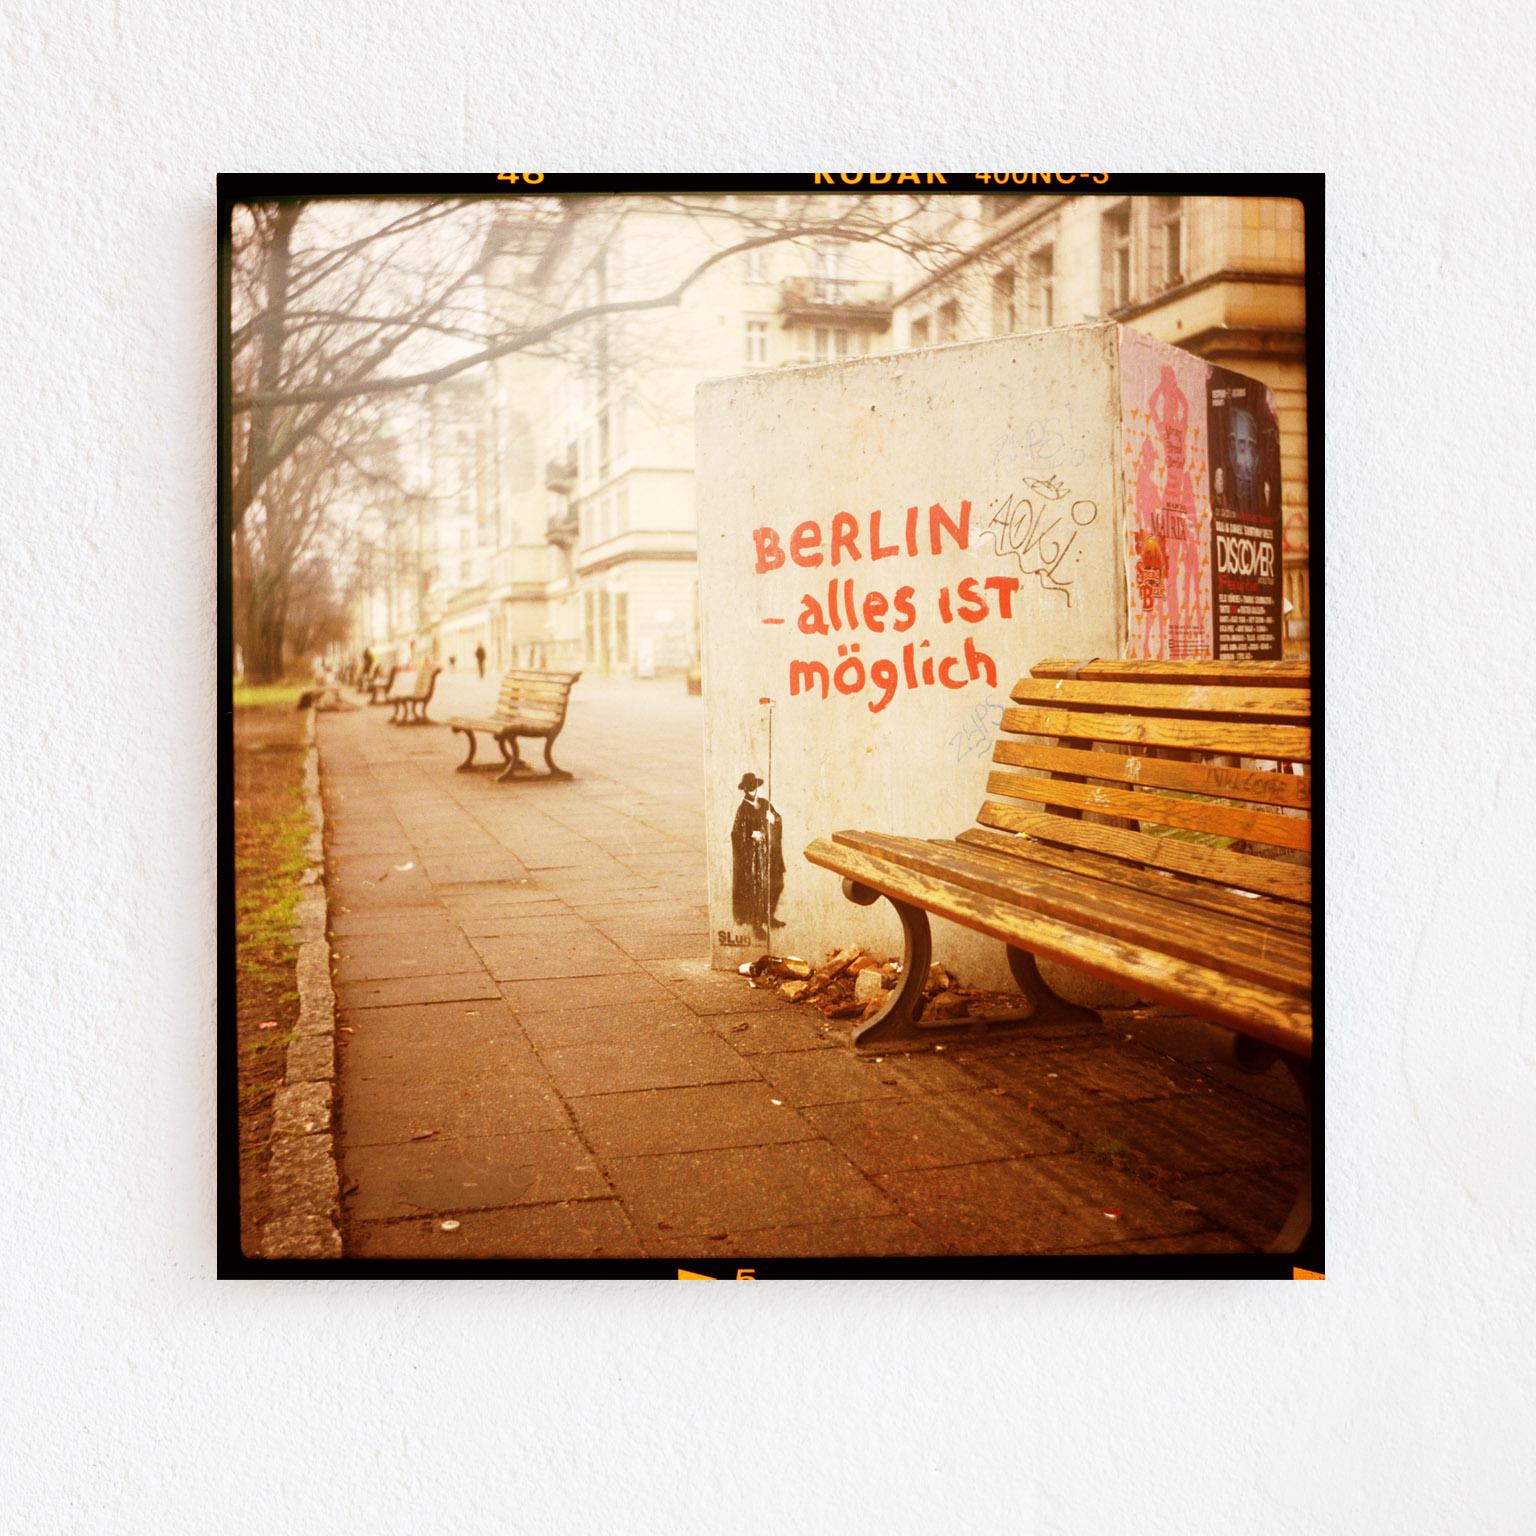 a Piece of Berlin - alles ist möglich - Pieces of Berlin - Graffiti, Streetart - Photograph by Florian Reischauer